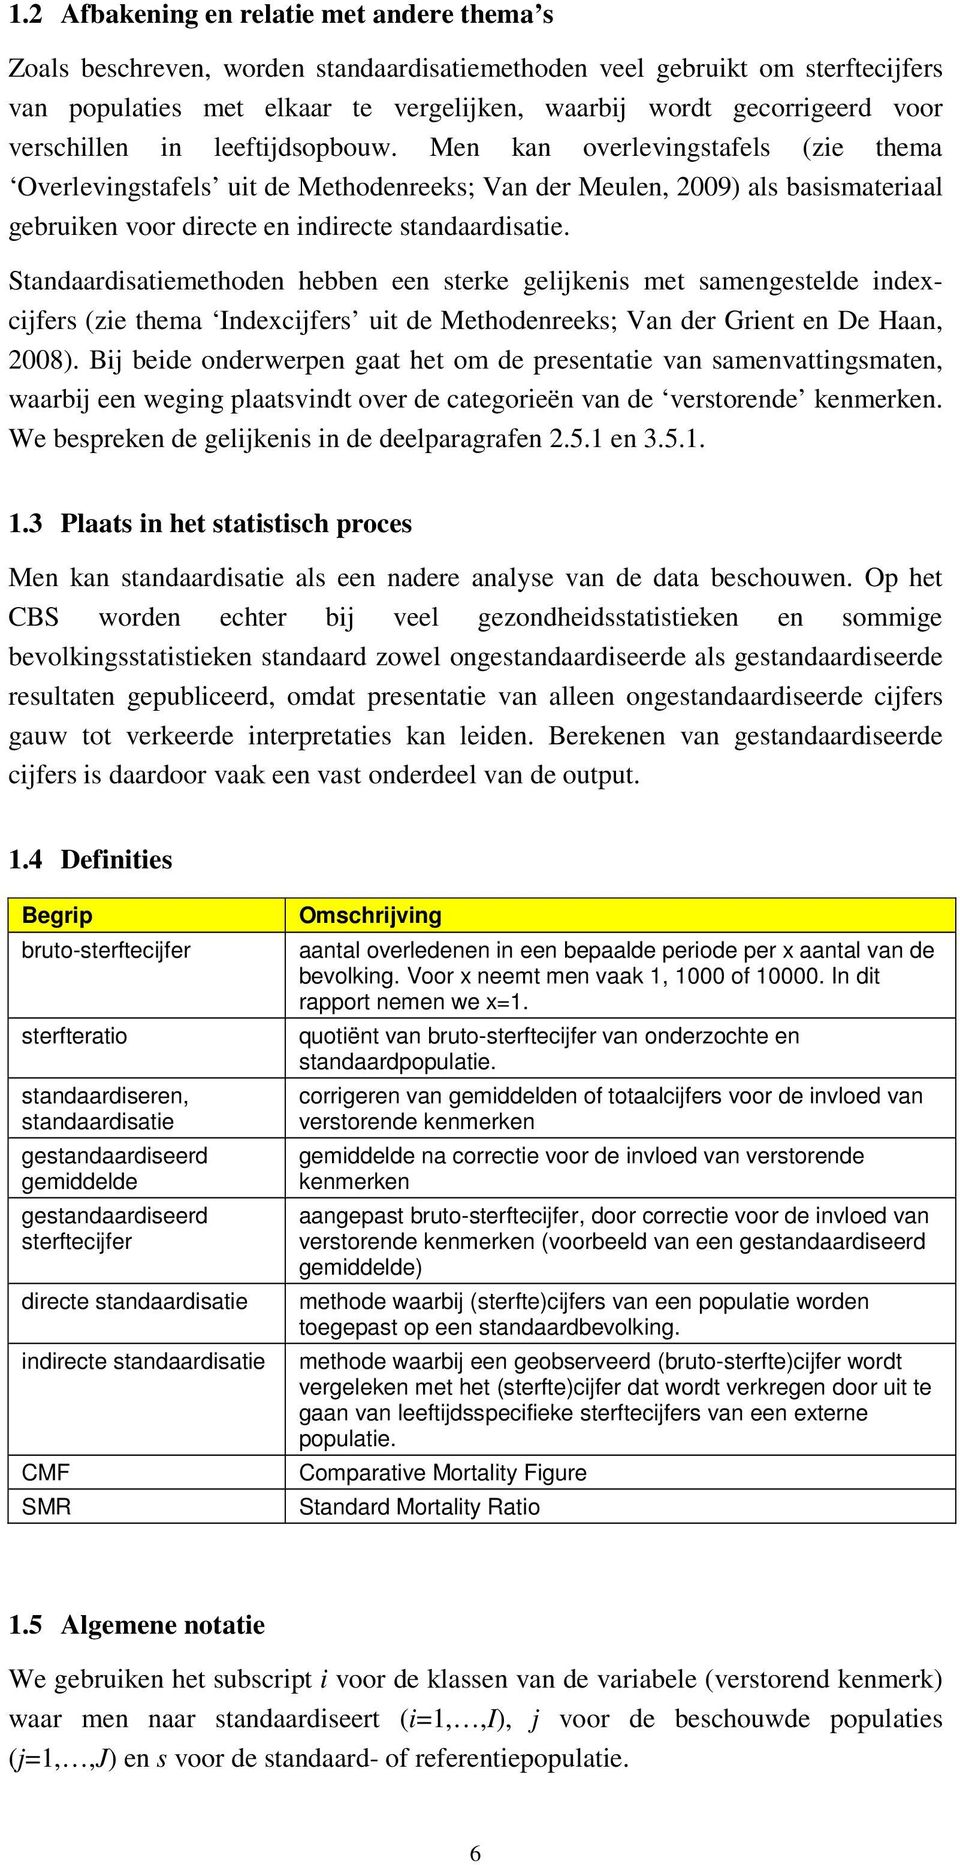 Standaardsatemethoden hebben een sterke gelkens met samengestelde ndexcfers (ze thema Indexcfers ut de Methodenreeks; Van der Grent en De Haan, 2008).